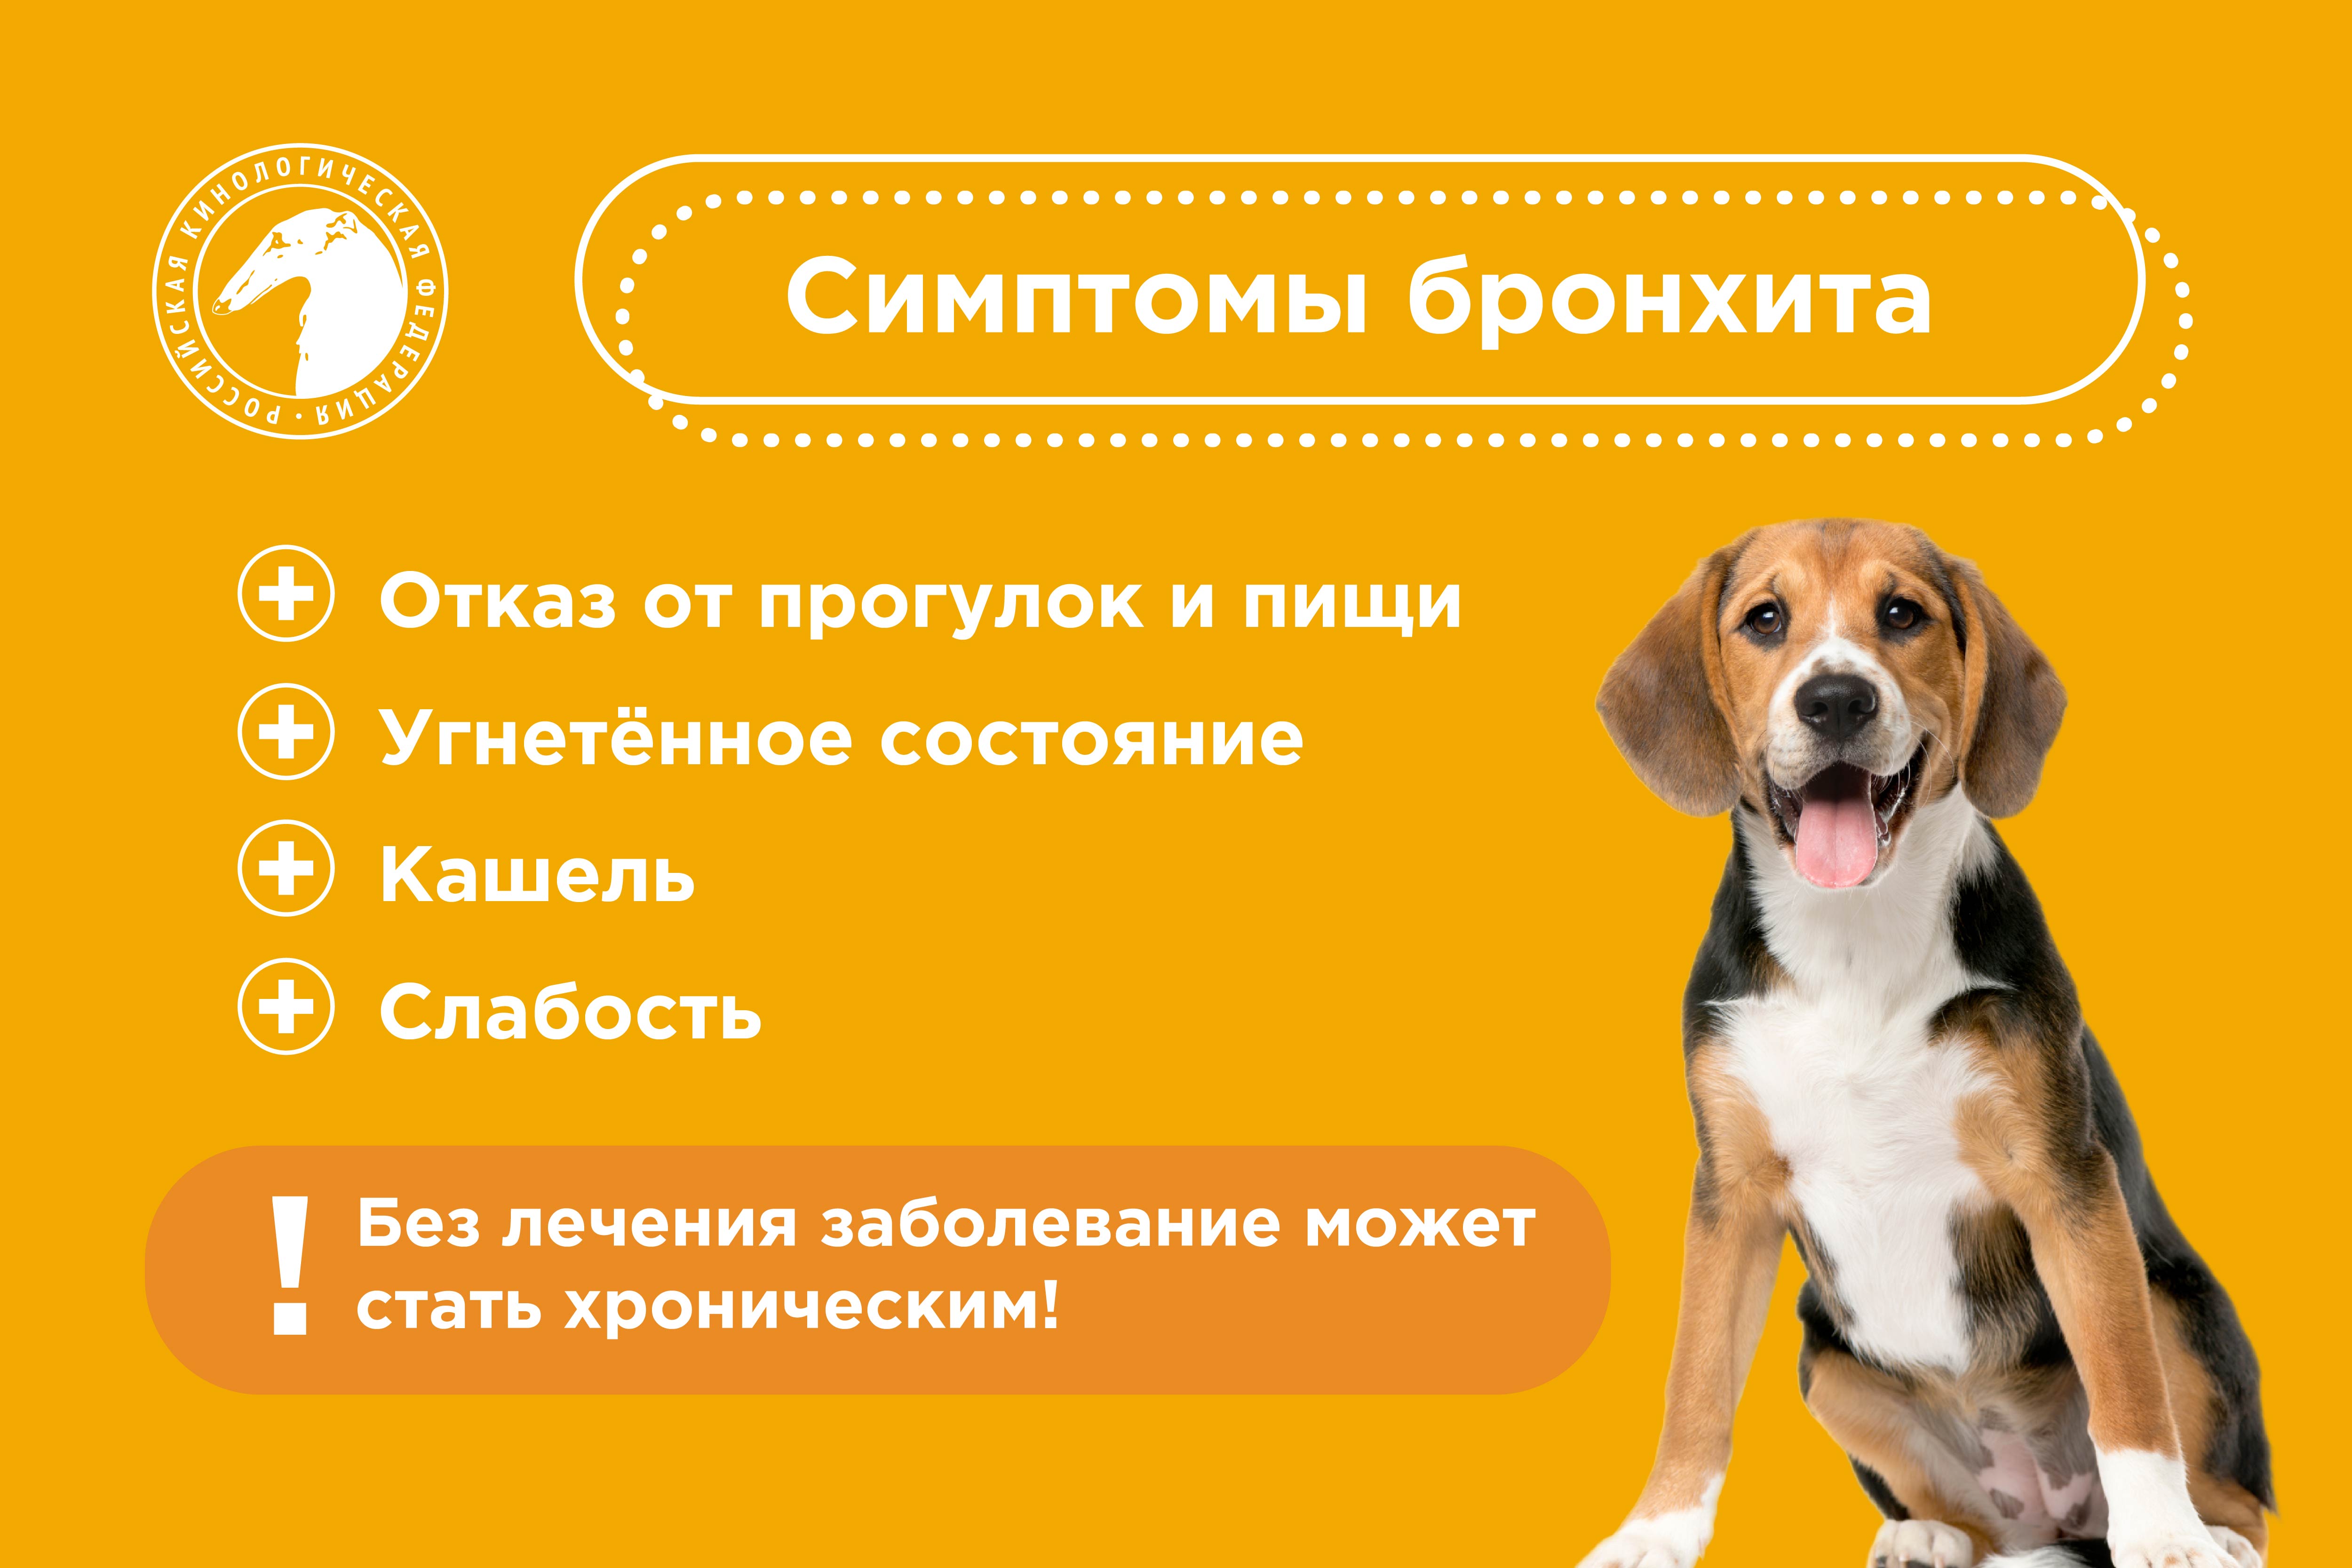 Бронхит у собак: симптомы, лечение и профилактика | Название сайта